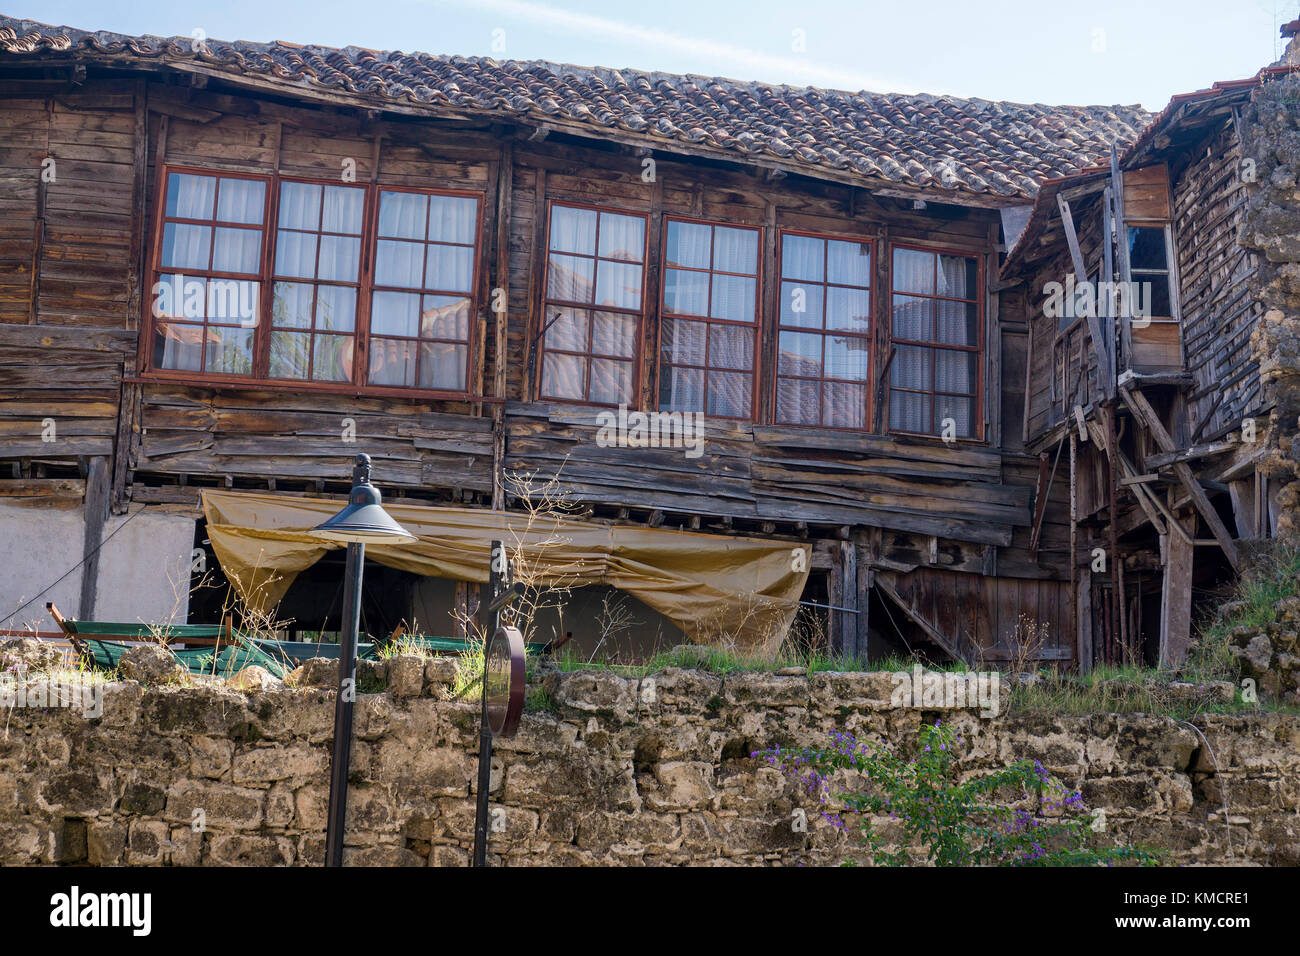 Old ottoman wooden house at Kaleici, the old town of Antalya, turkish riviera, Turkey Stock Photo